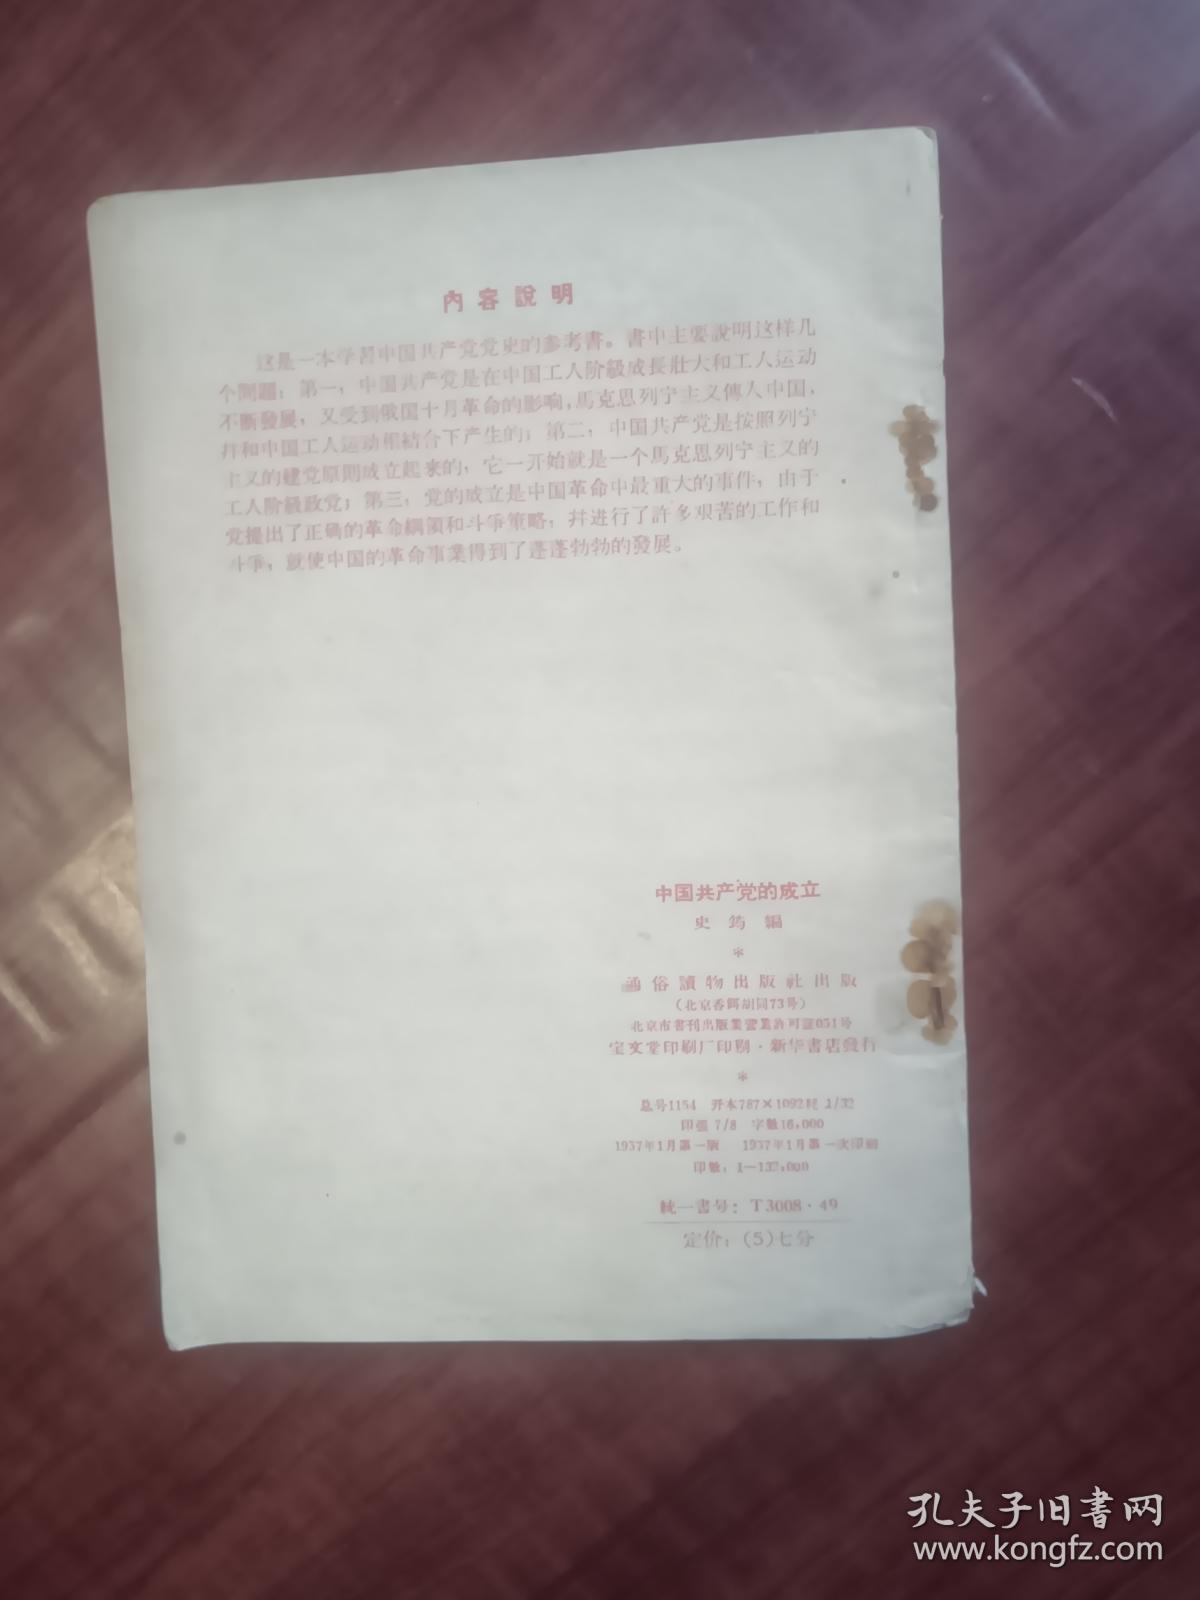 中国共产党的成立1957年1月版